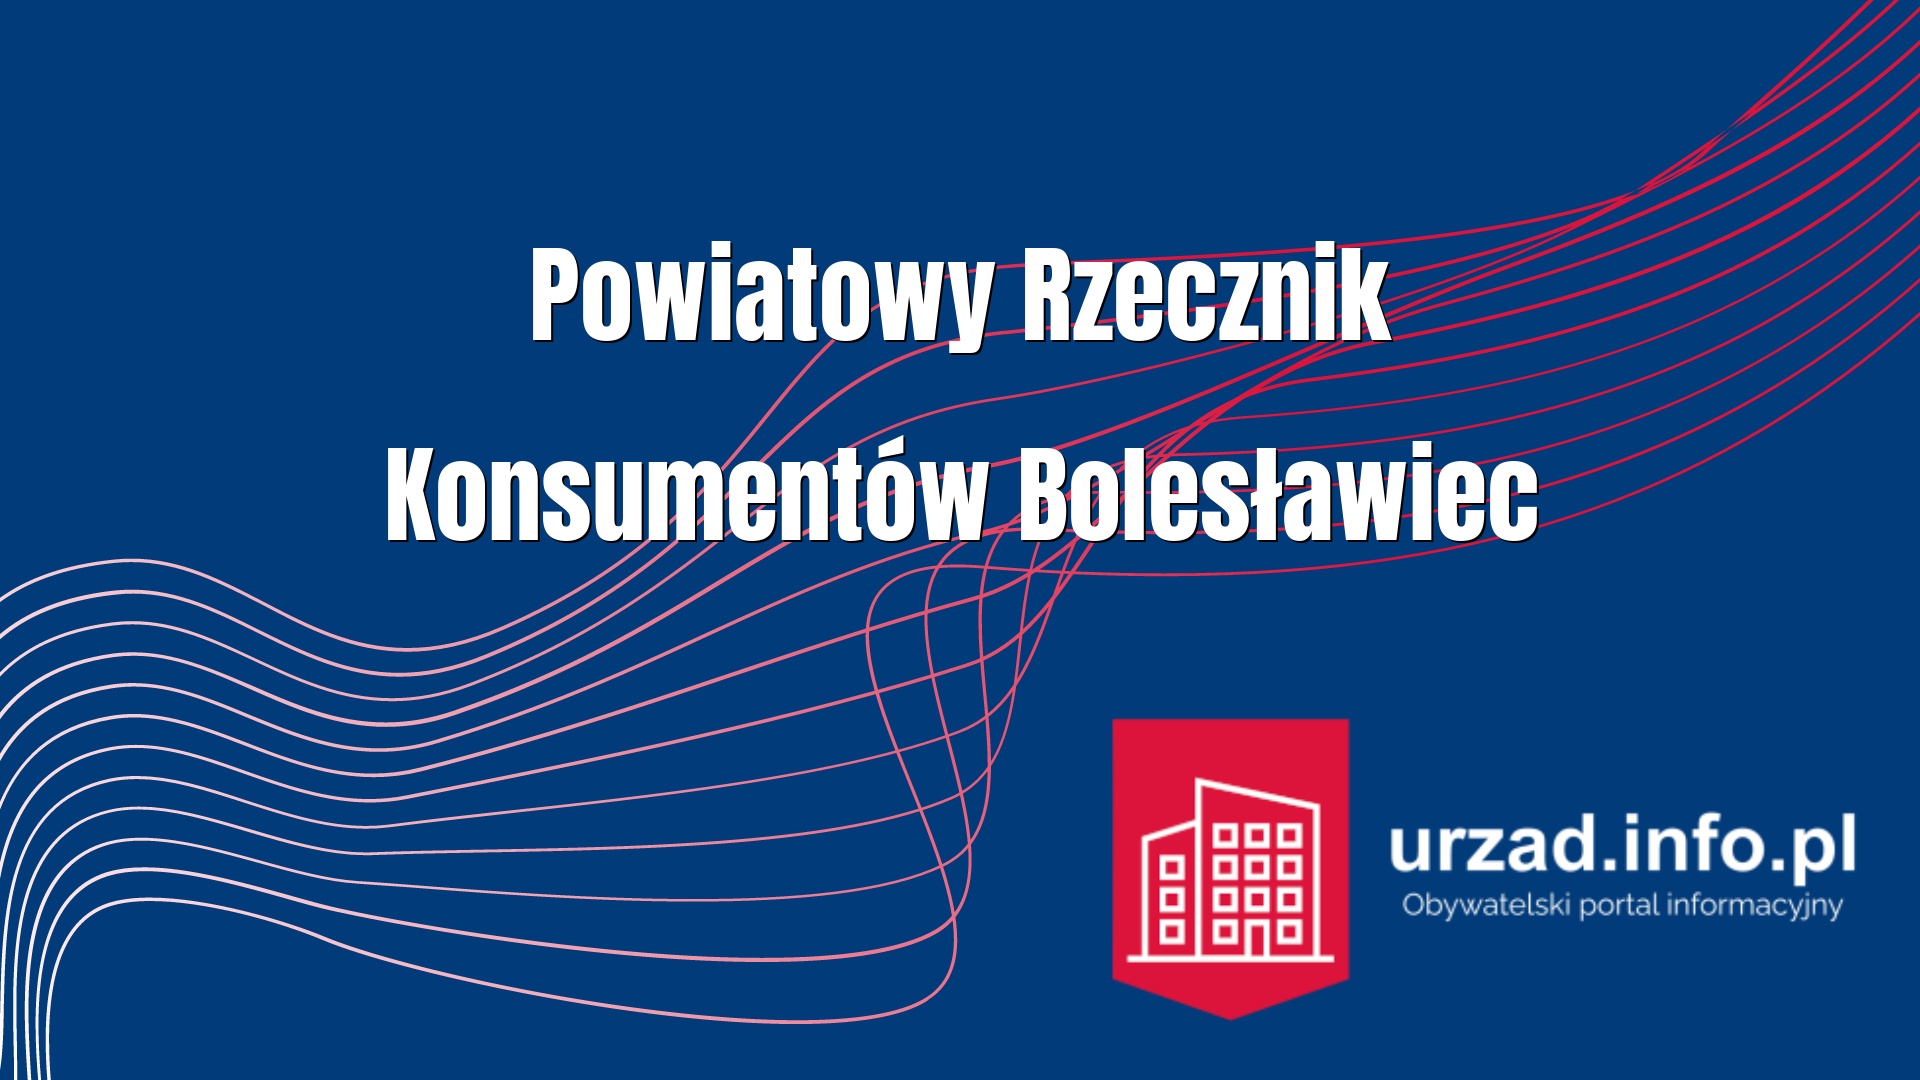 Powiatowy Rzecznik Konsumentów Bolesławiec